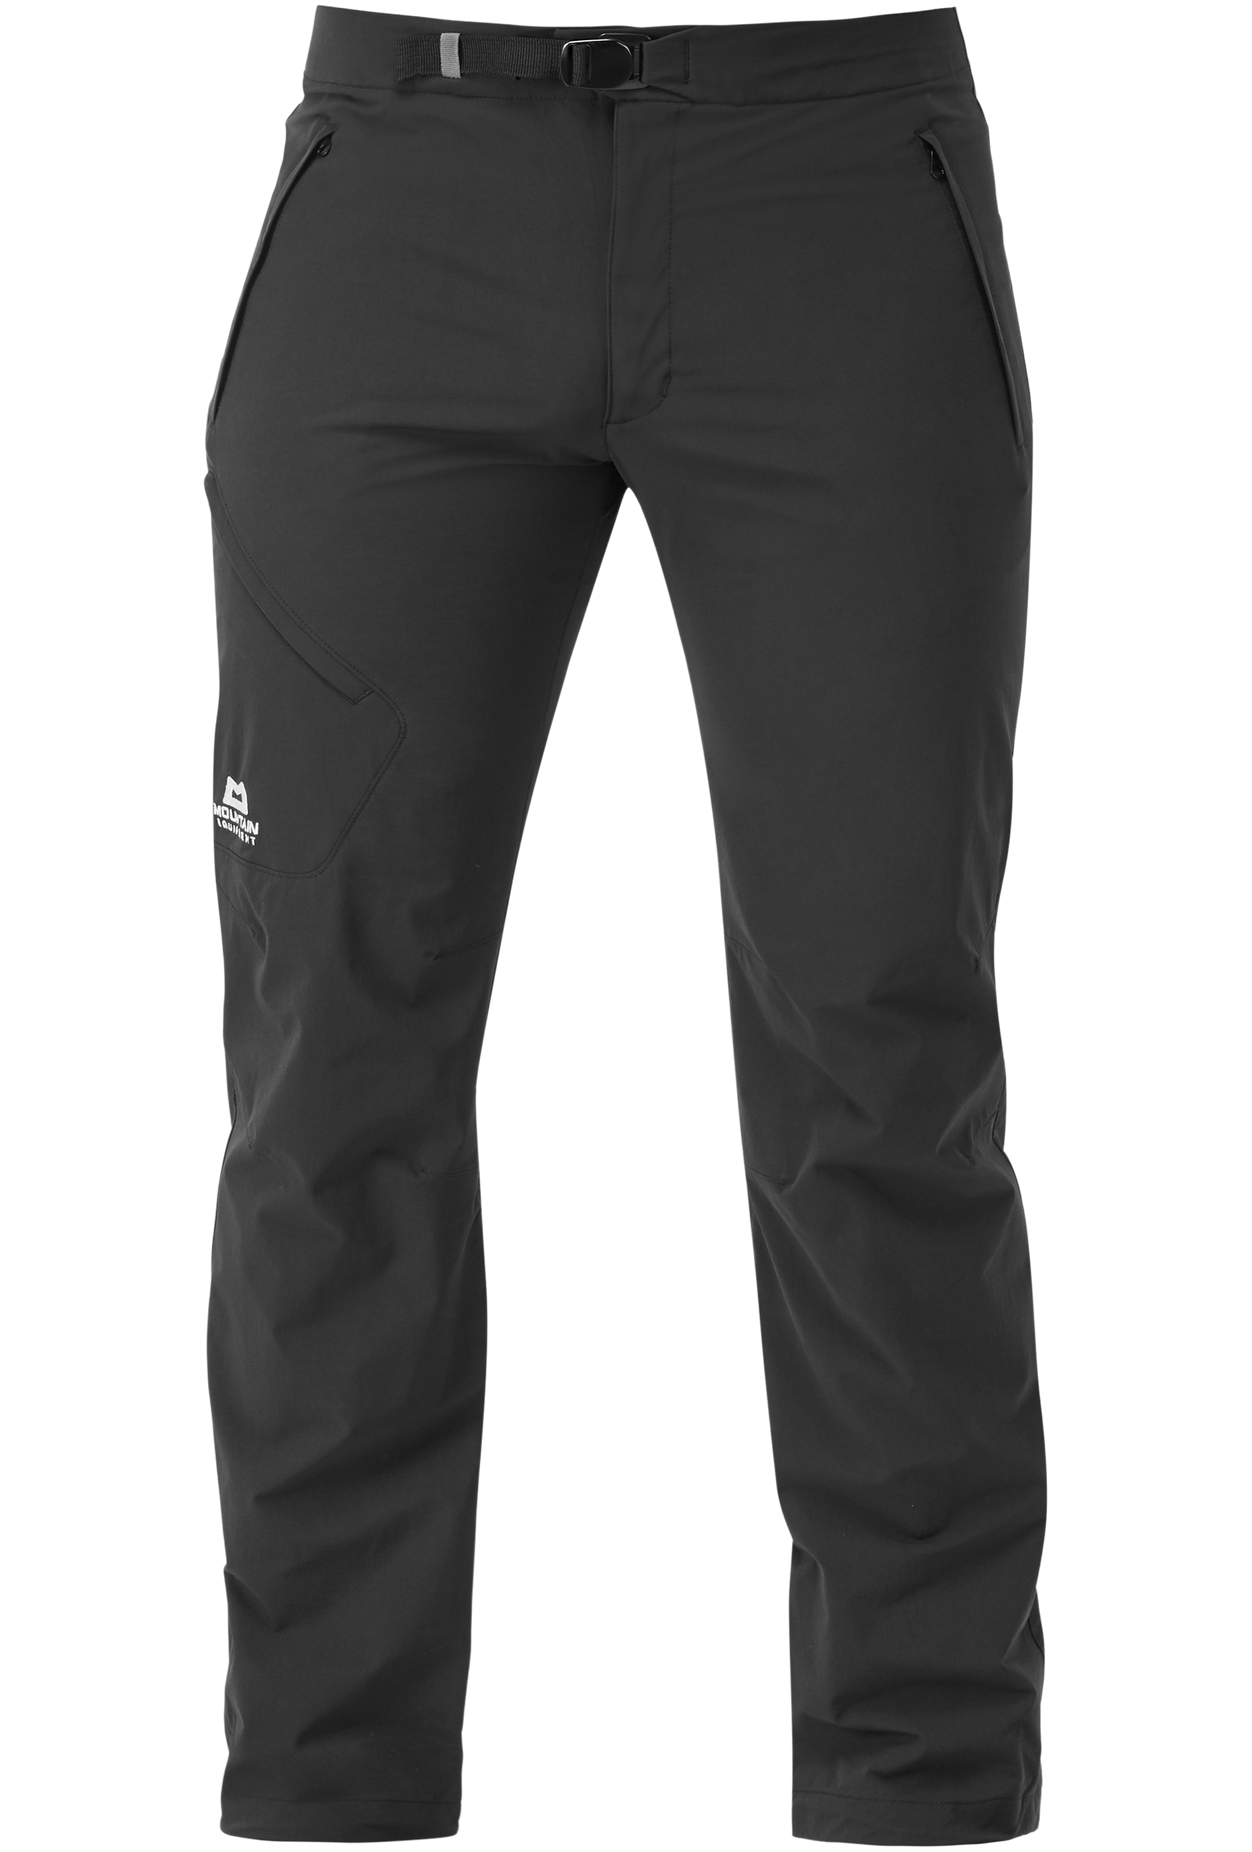 Mountain Equipment pánské softshellové kalhoty Comici Pant - prodloužené Barva: black/black, Velikost: 36/XL